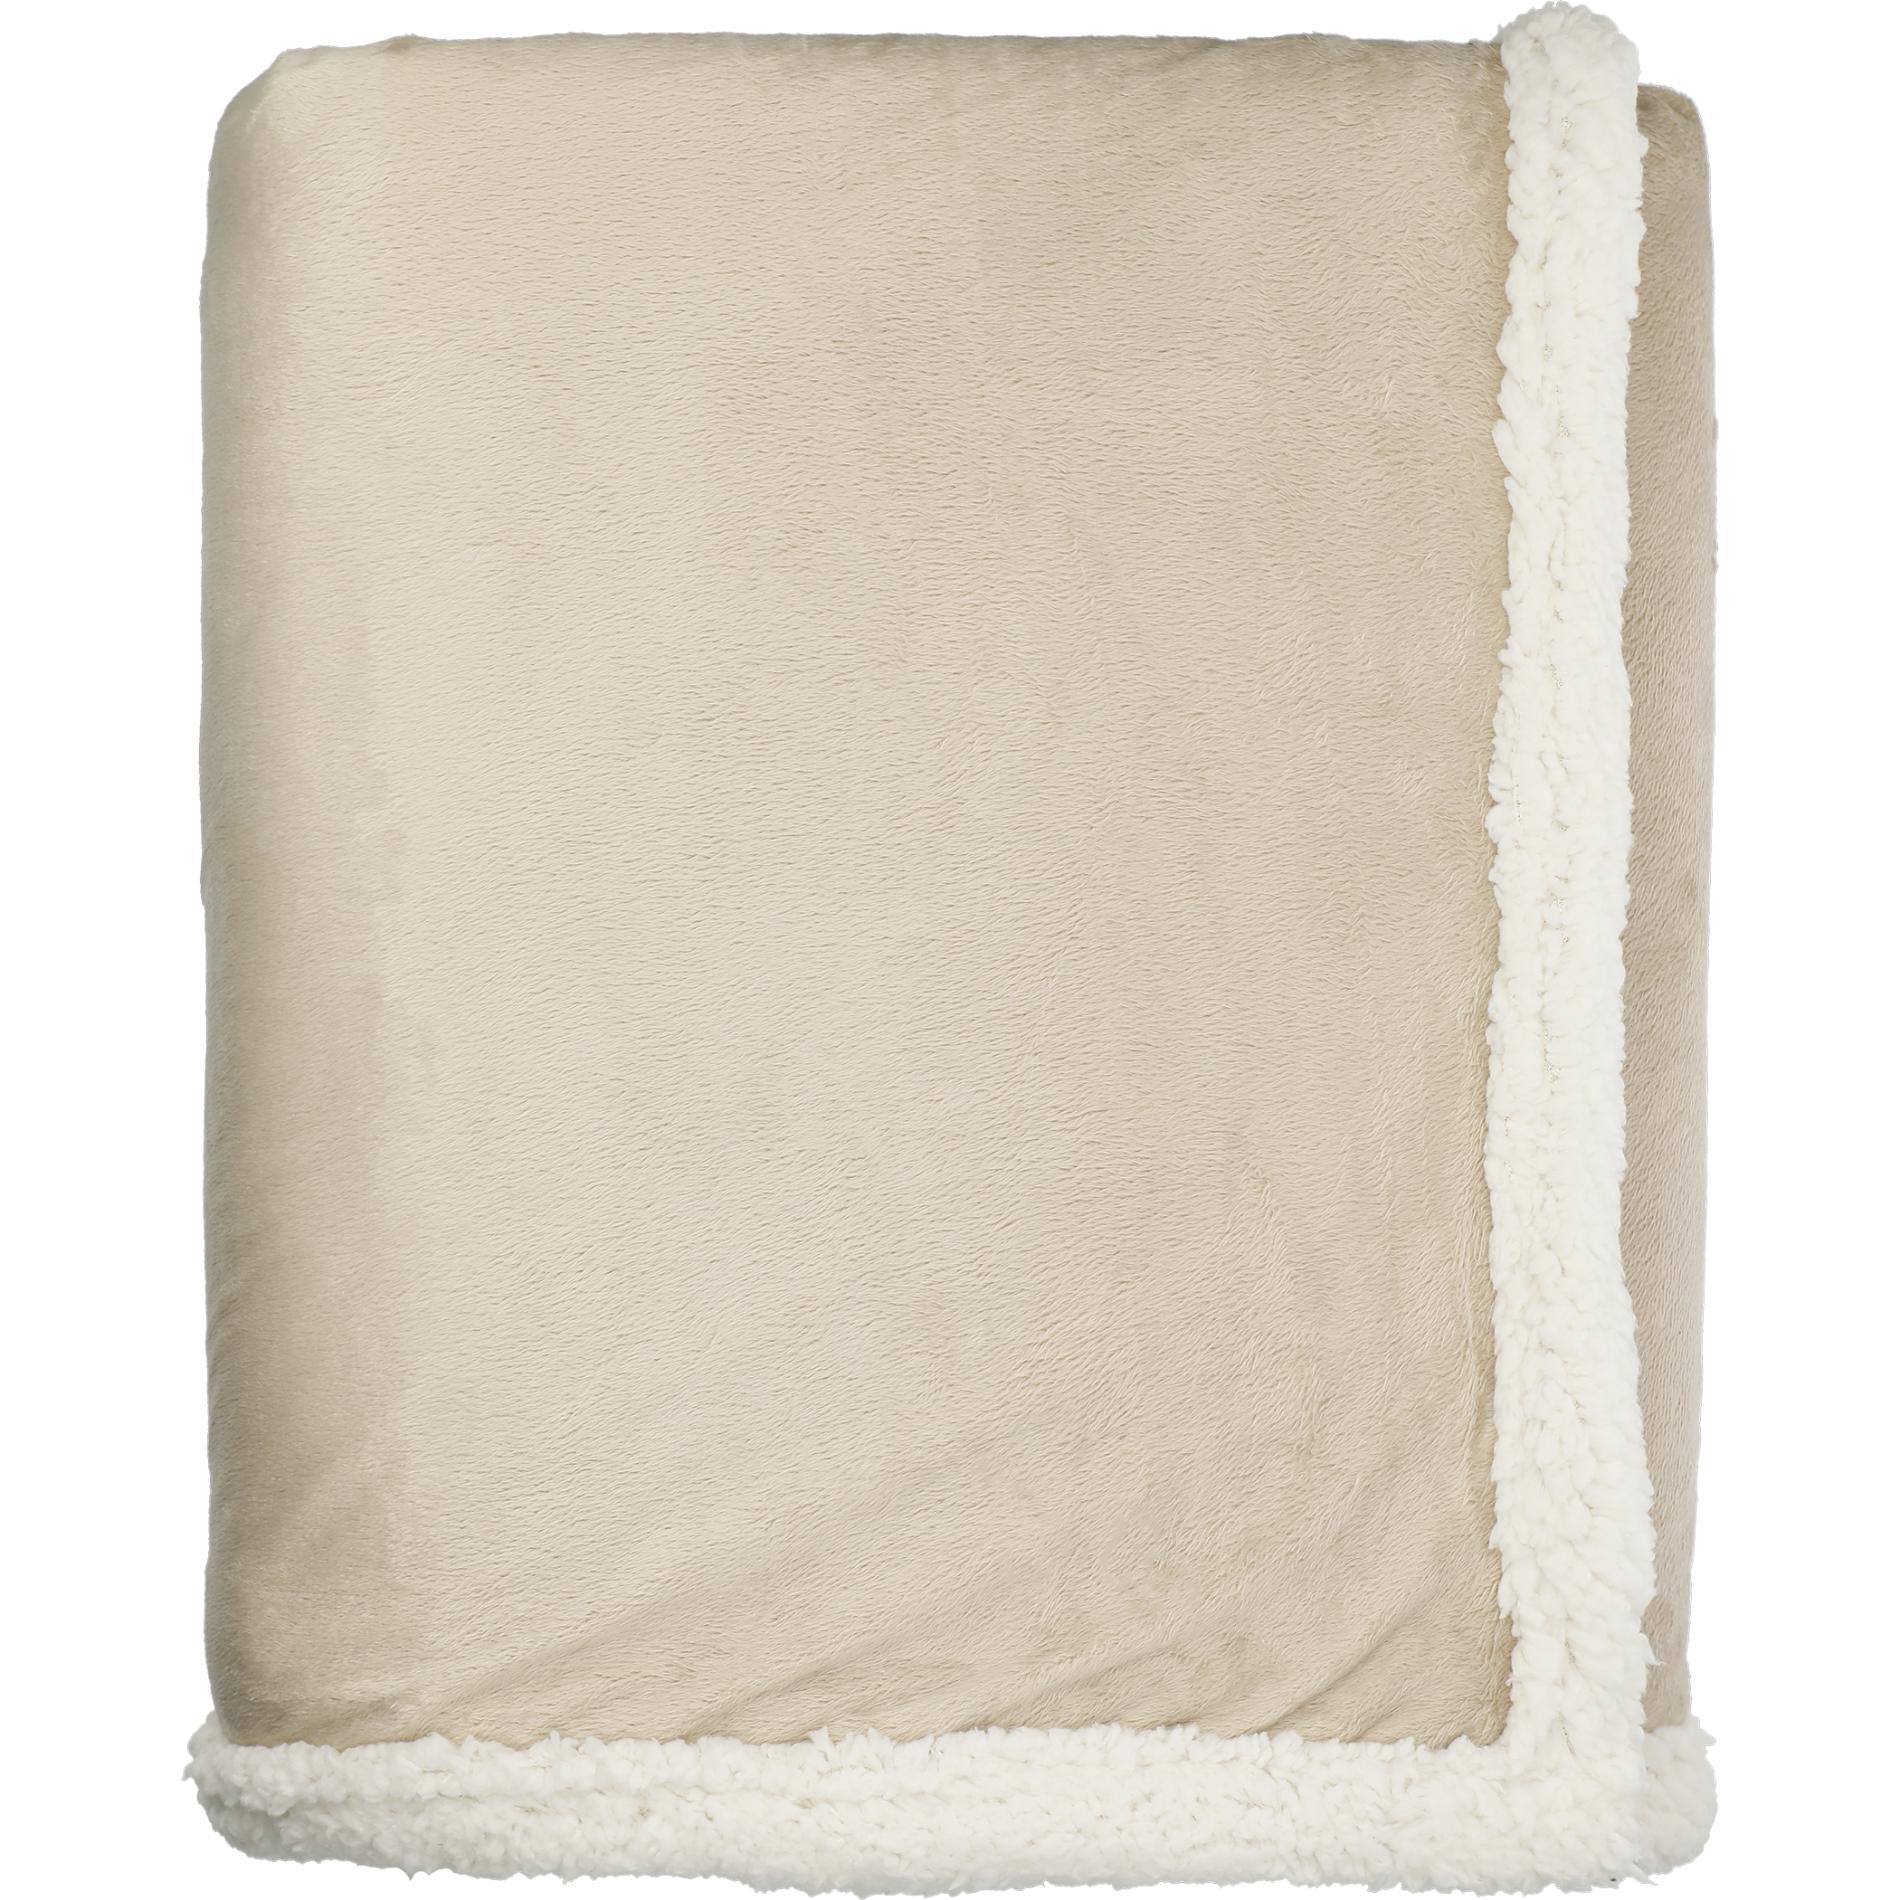 Field & Co. 7950-51 - Cambridge Oversized Sherpa Blanket